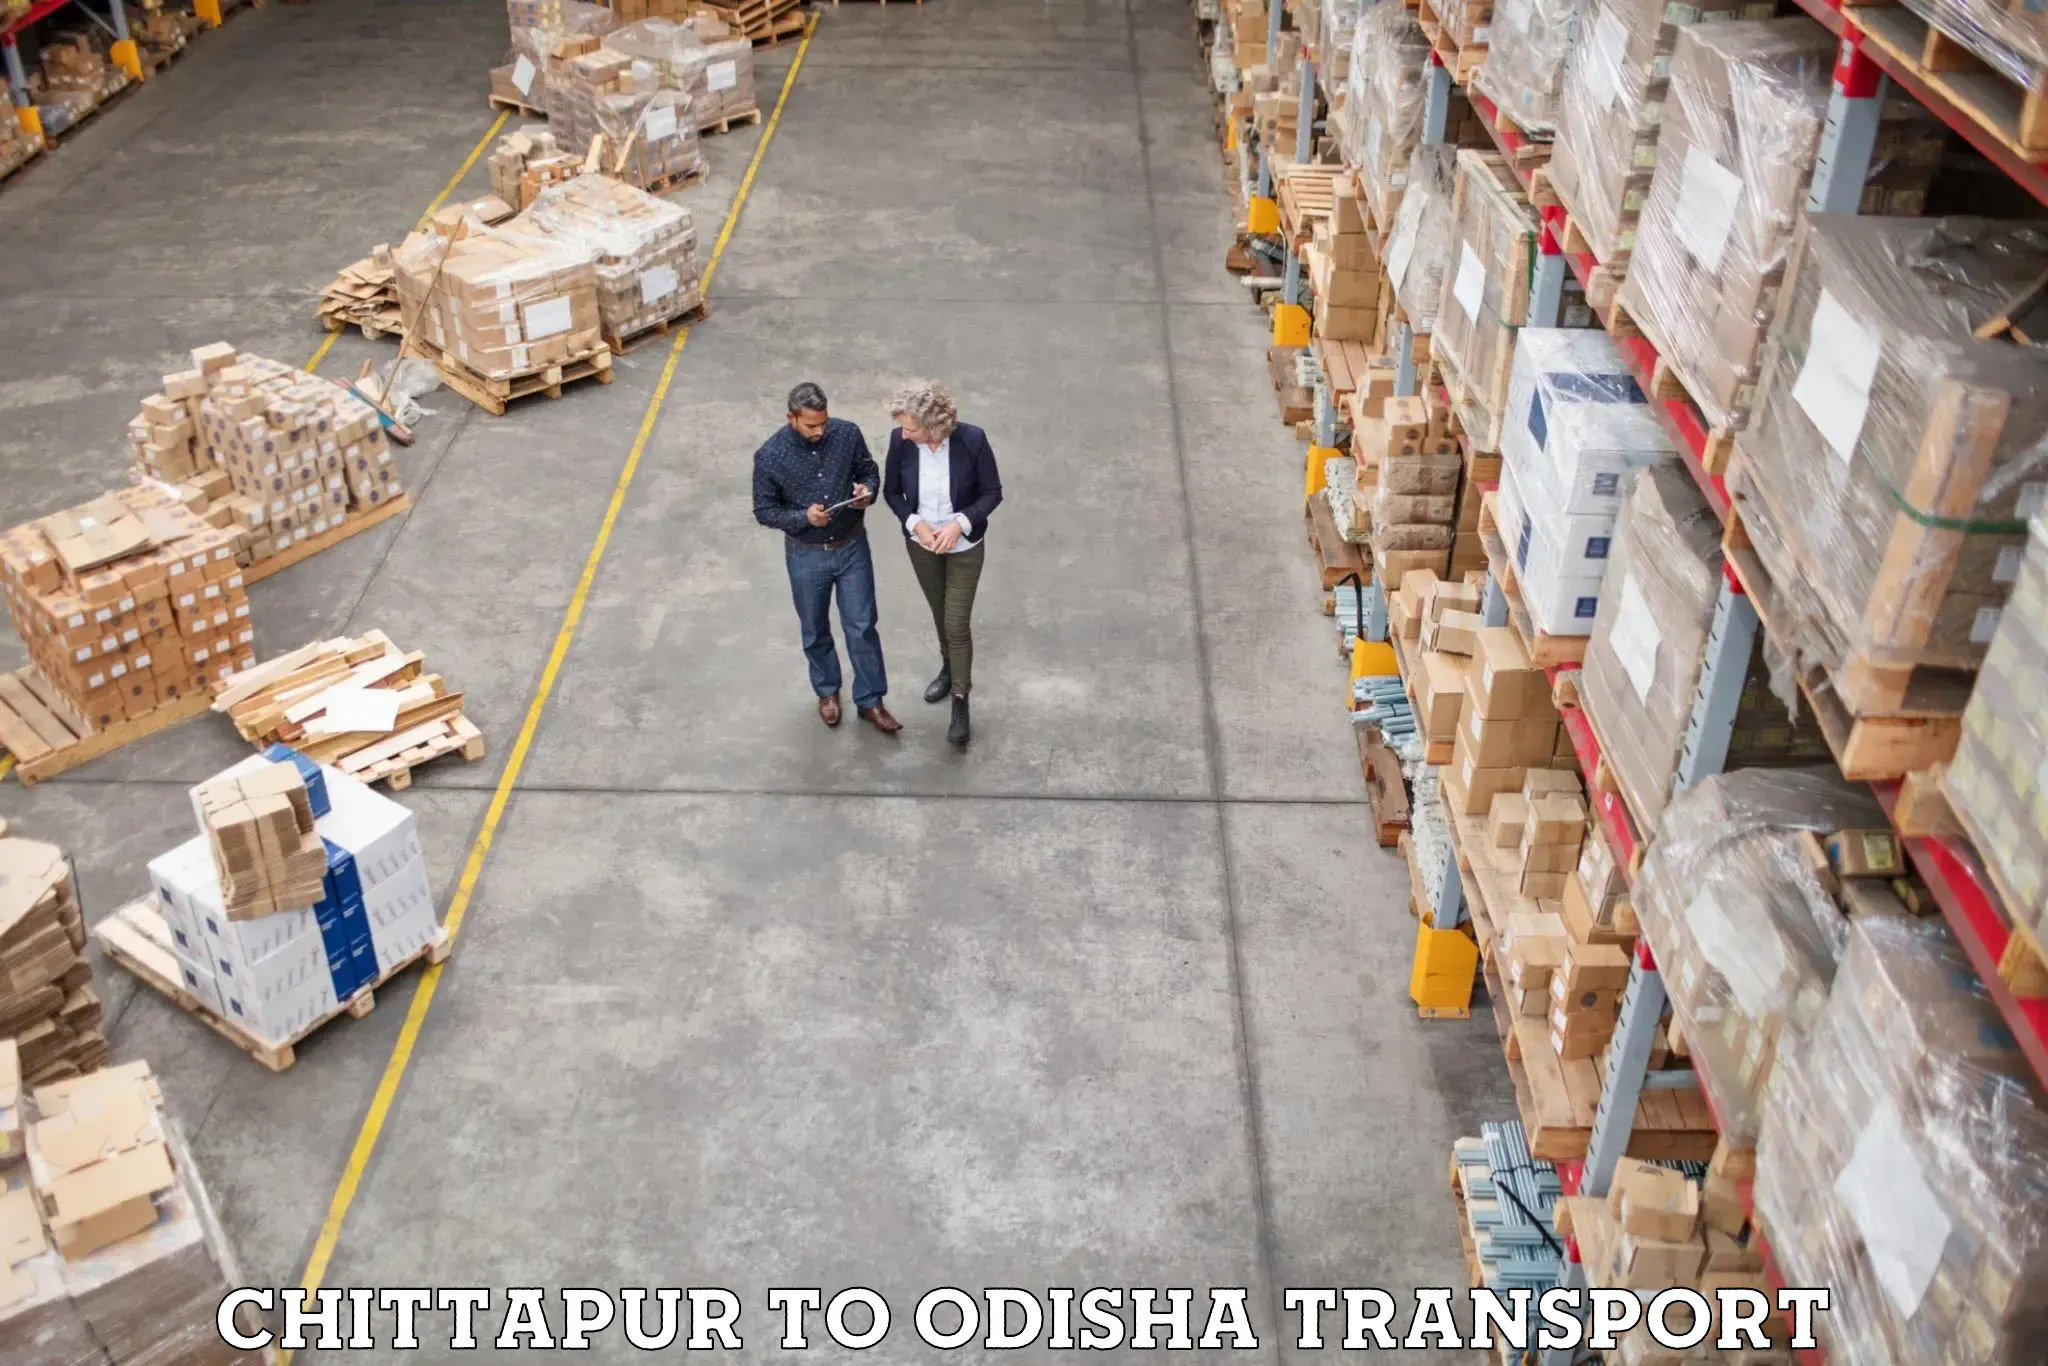 Nearest transport service in Chittapur to Birmitrapur